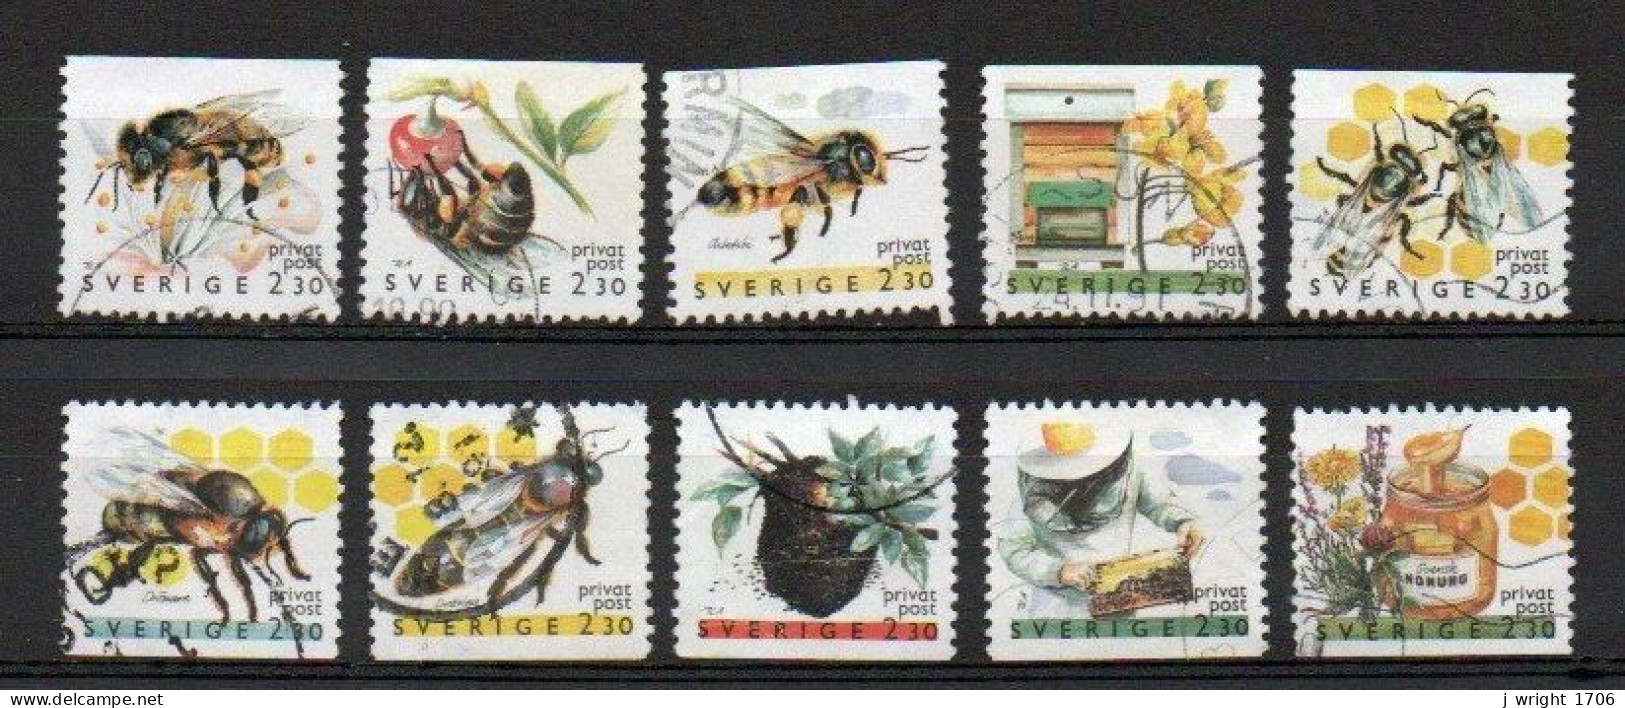 Sweden, 1990, Rebate Stamps/Honey Bees, Set, USED - Usados